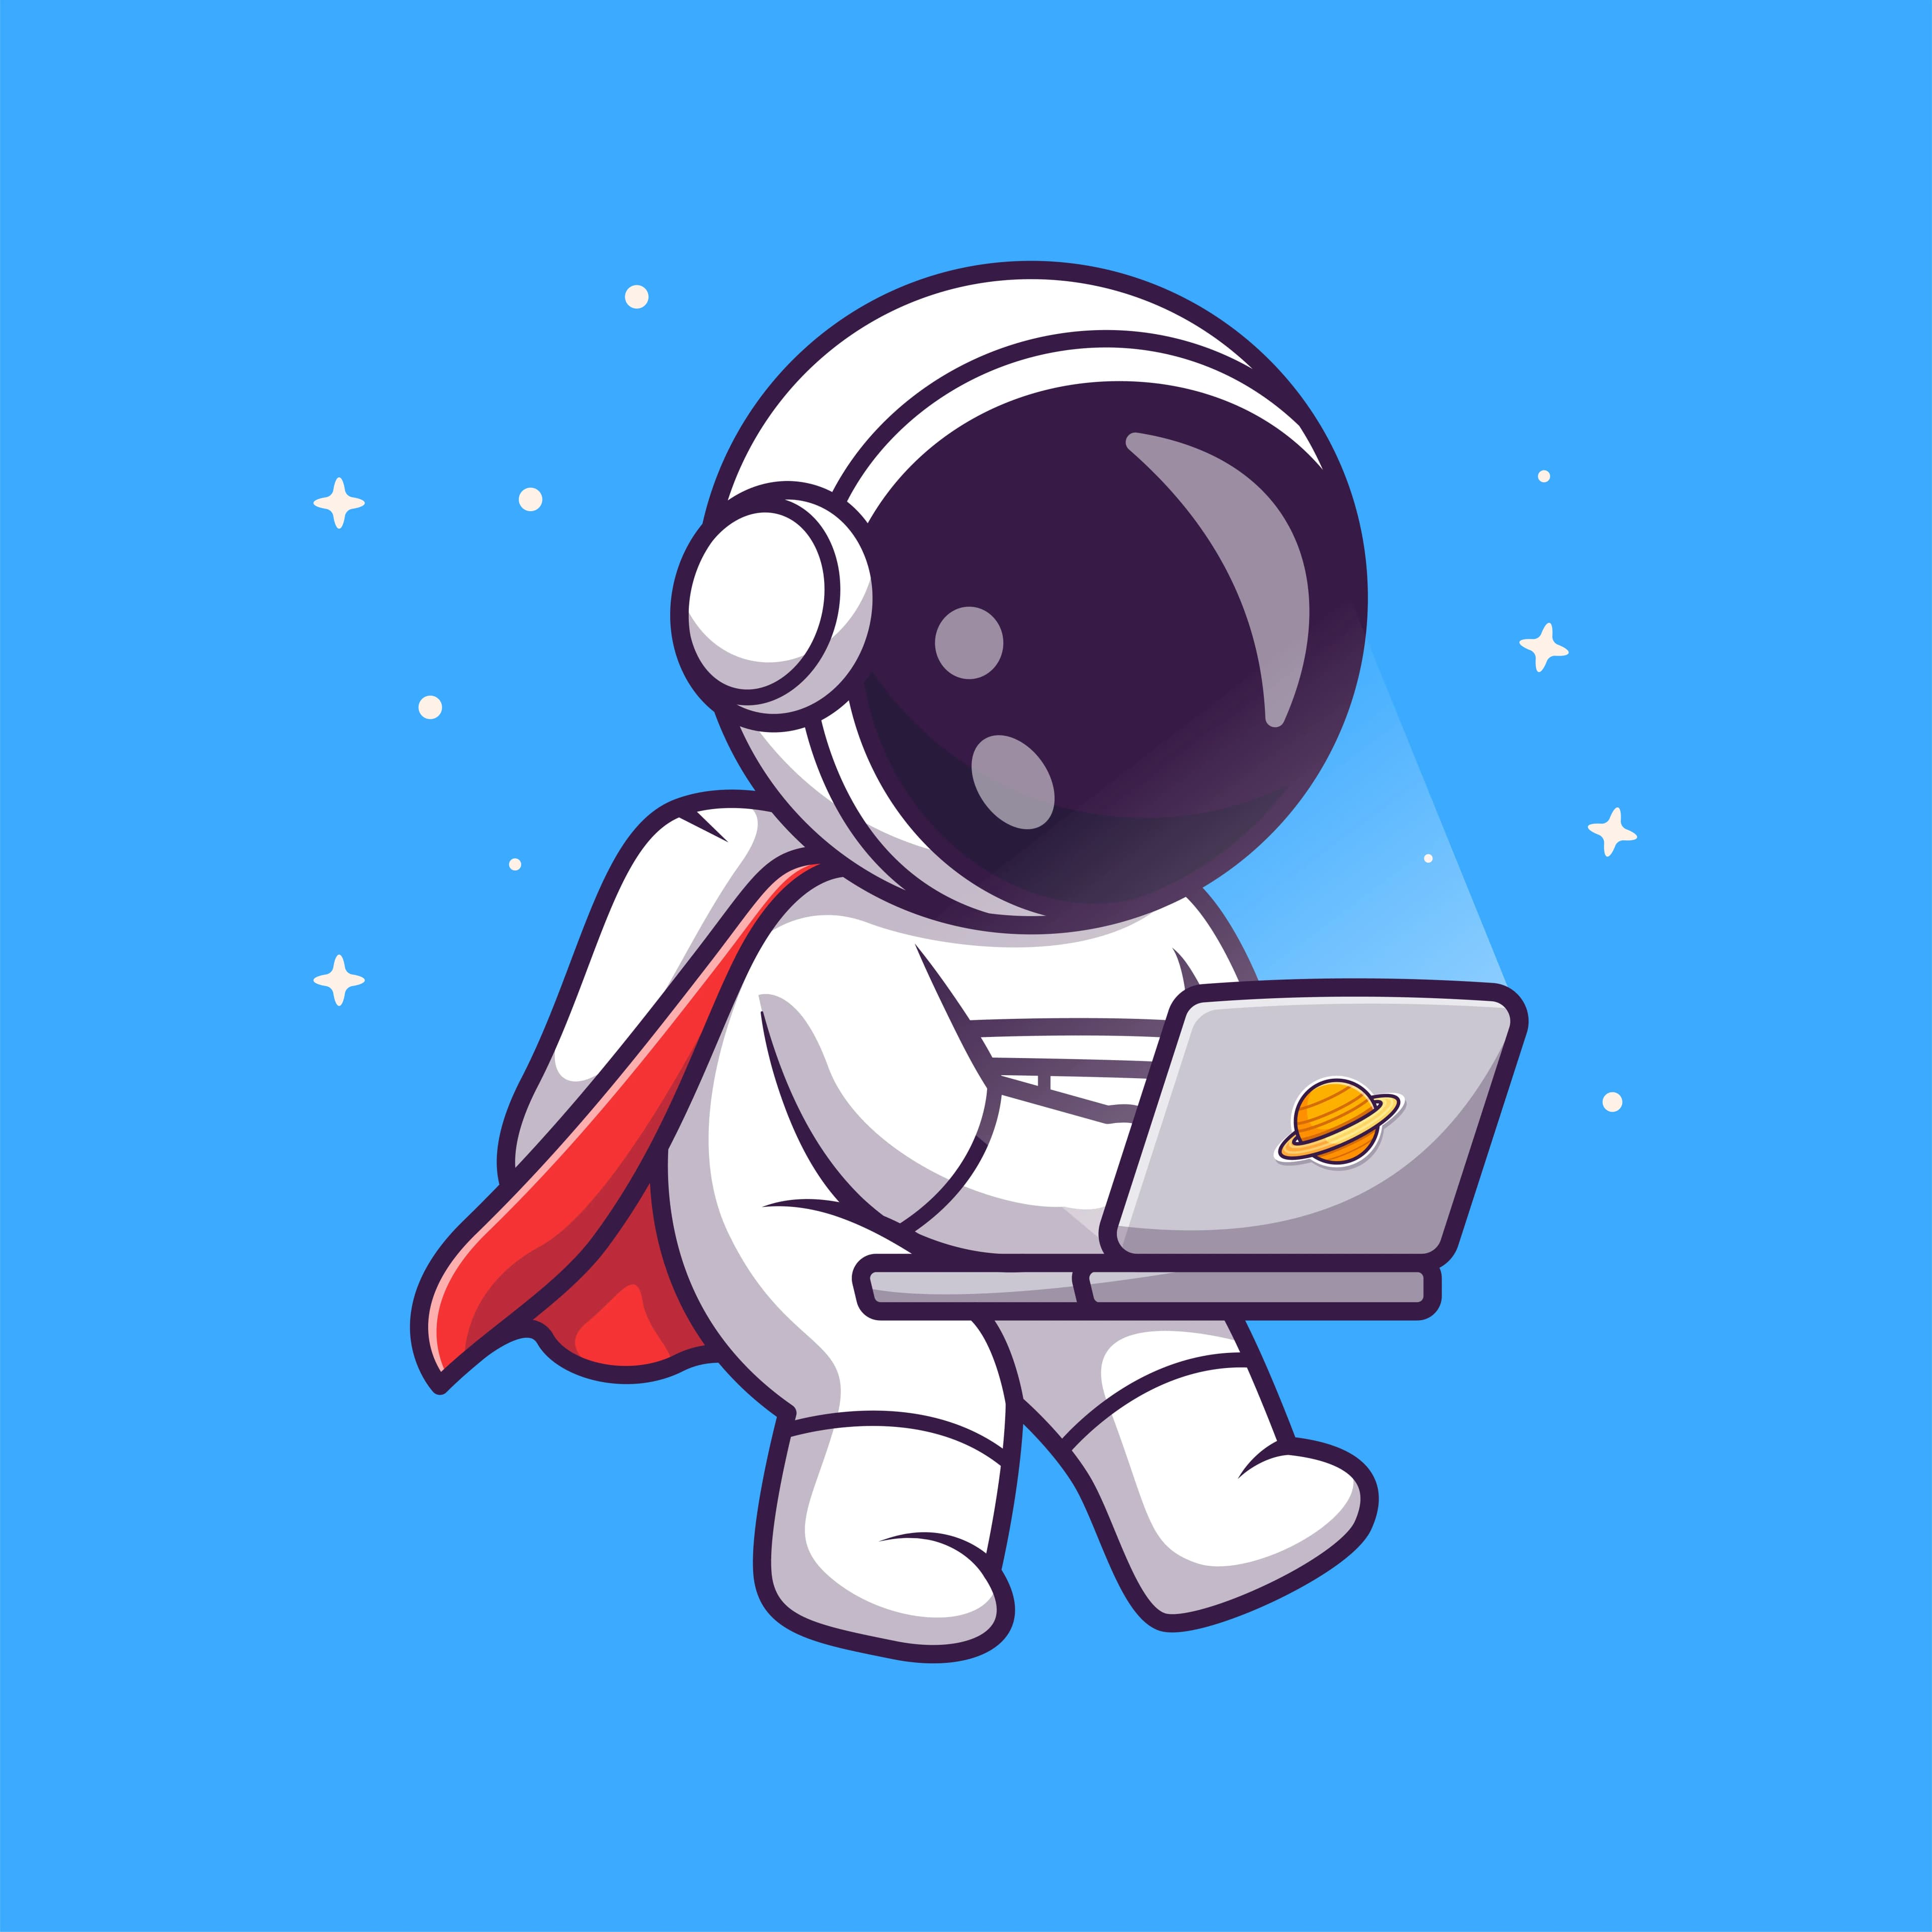 An astronauta carring a laptop